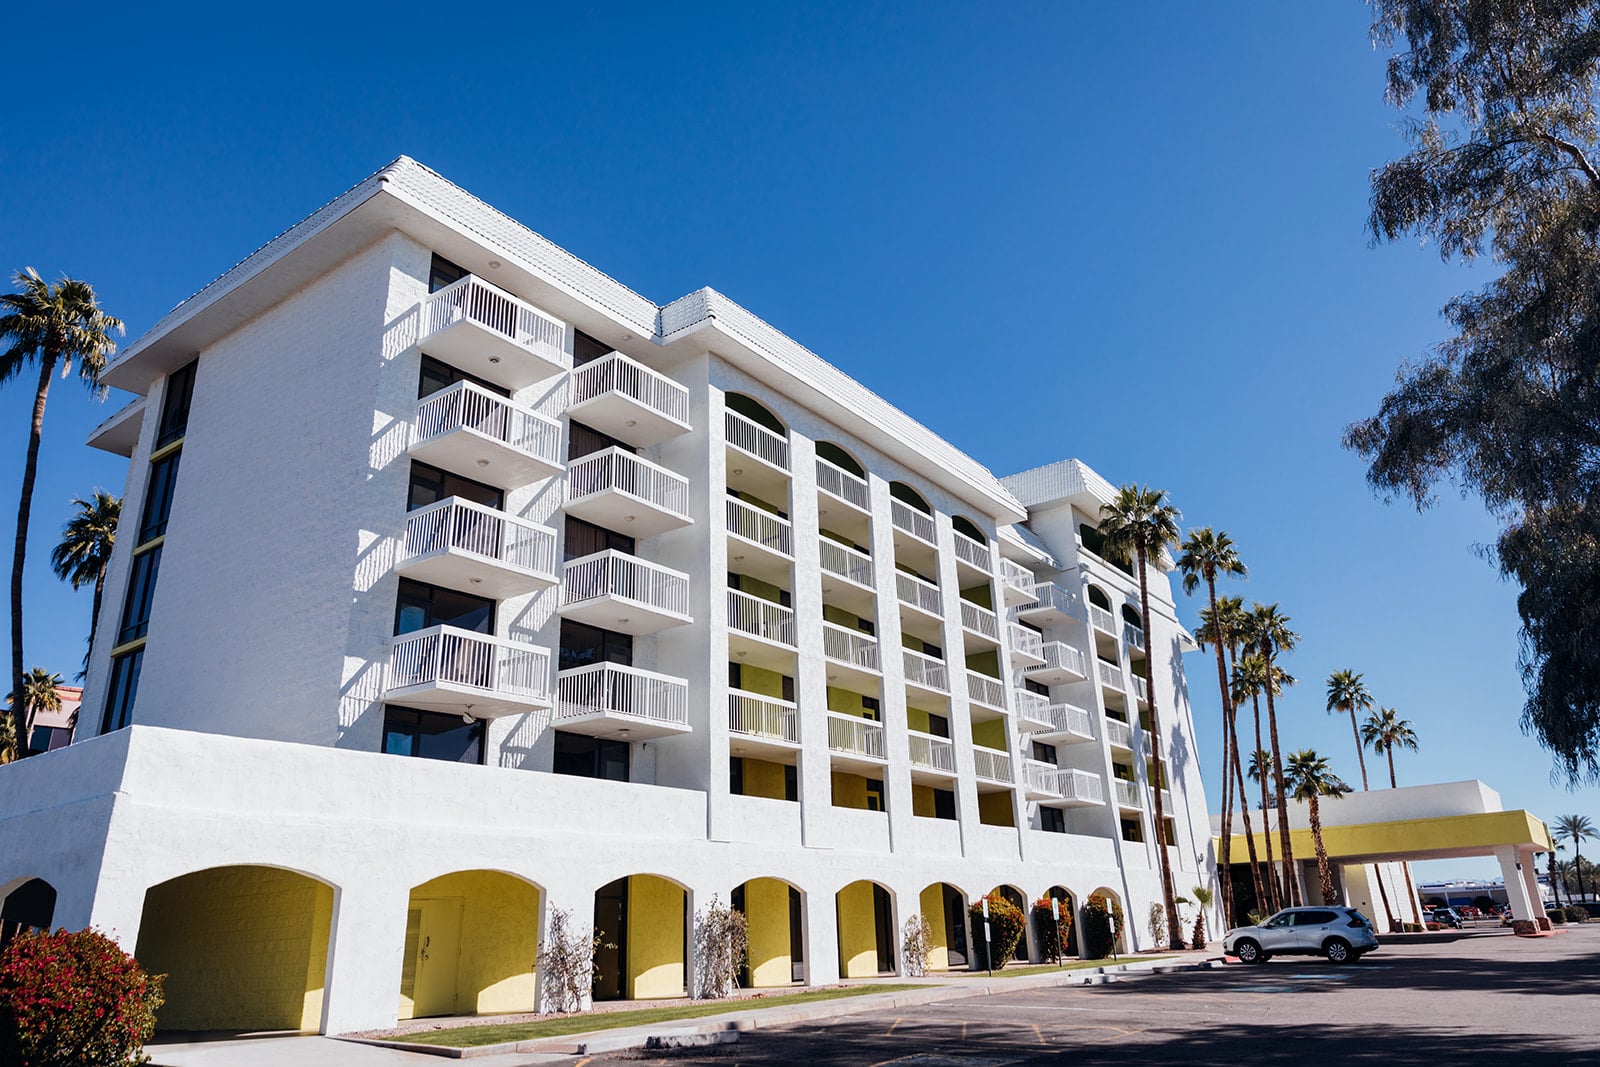 Holiday Inn, Mesa AZ - JZW Architects